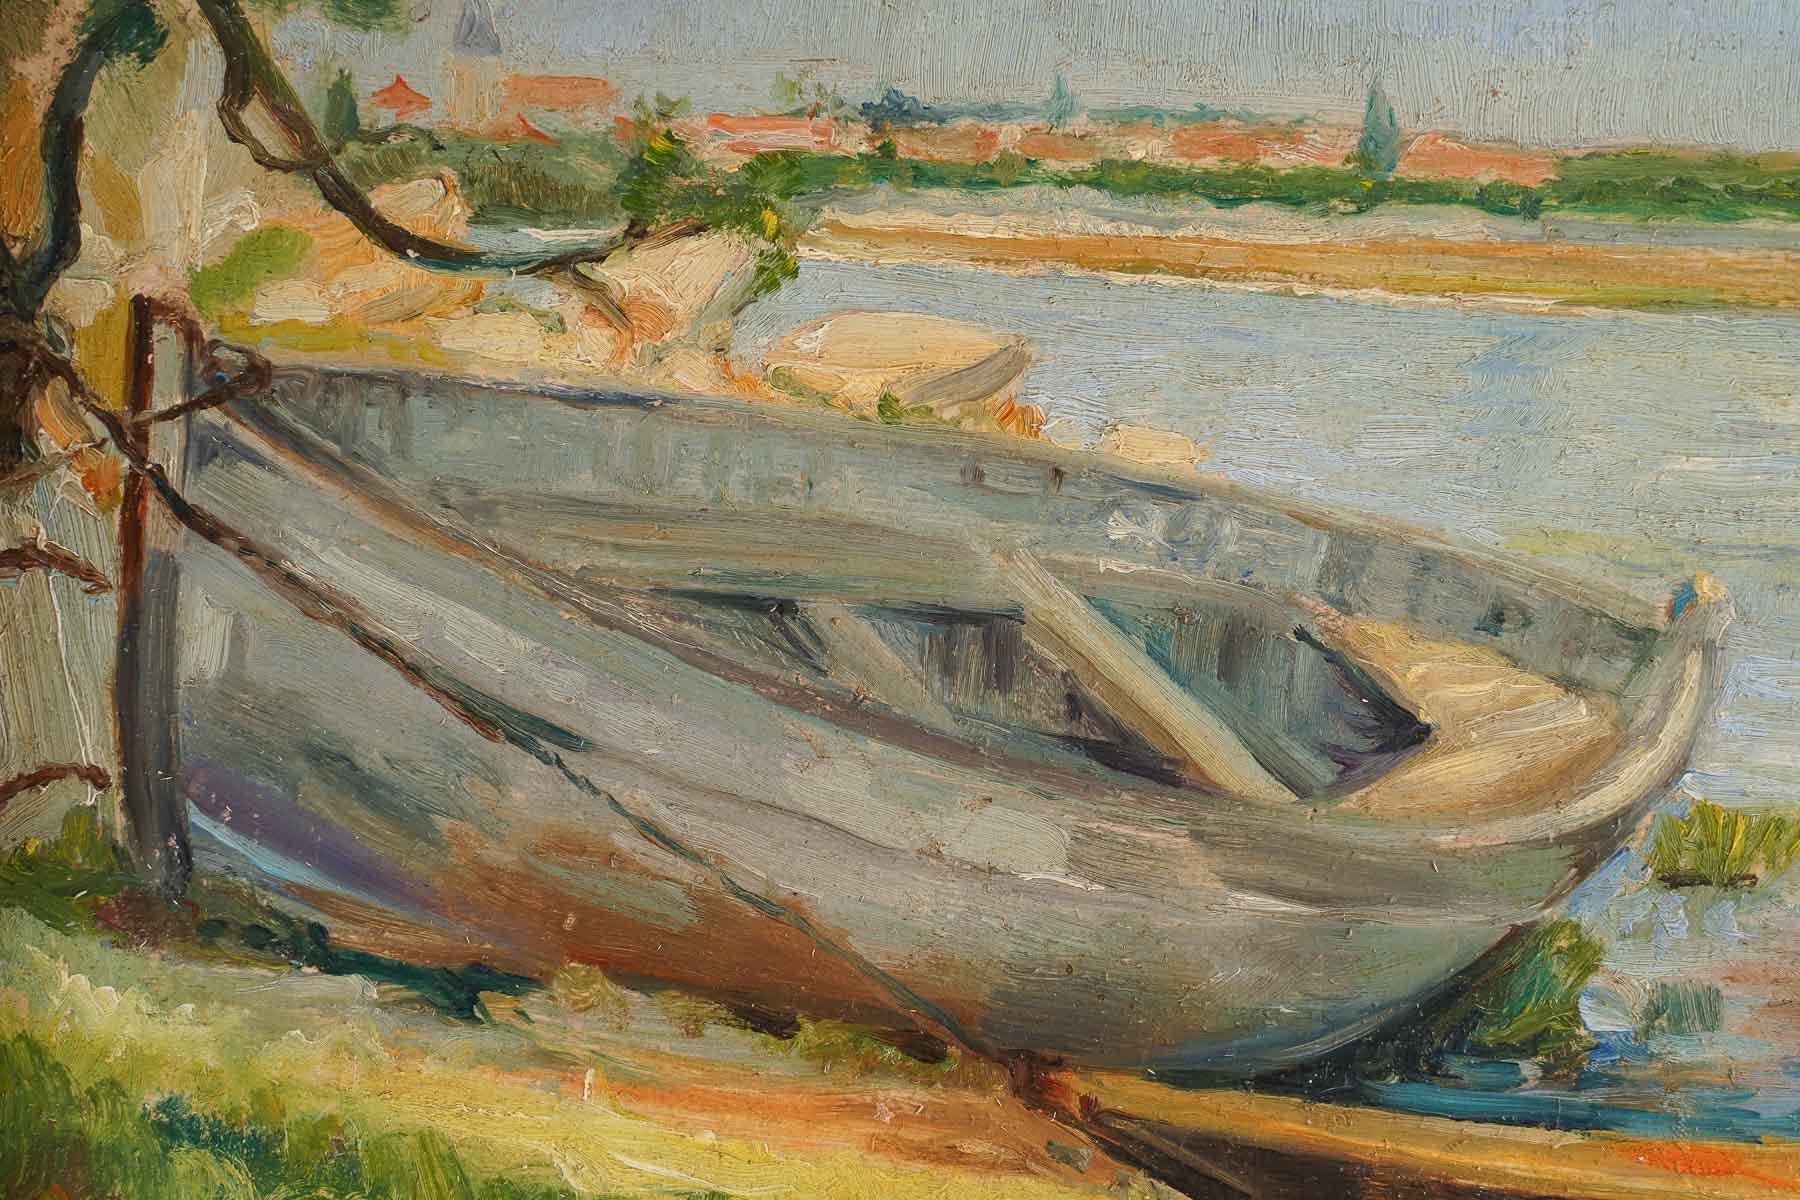 Peinture sur le thème de la campagne au bord de l'eau, représentant un bateau amarré sur la rive et deux enfants se séchant après avoir pris un bain et se séchant au soleil.
Huile sur toile signée par Dante Donzelli en bas à gauche.

Dante Donzelli